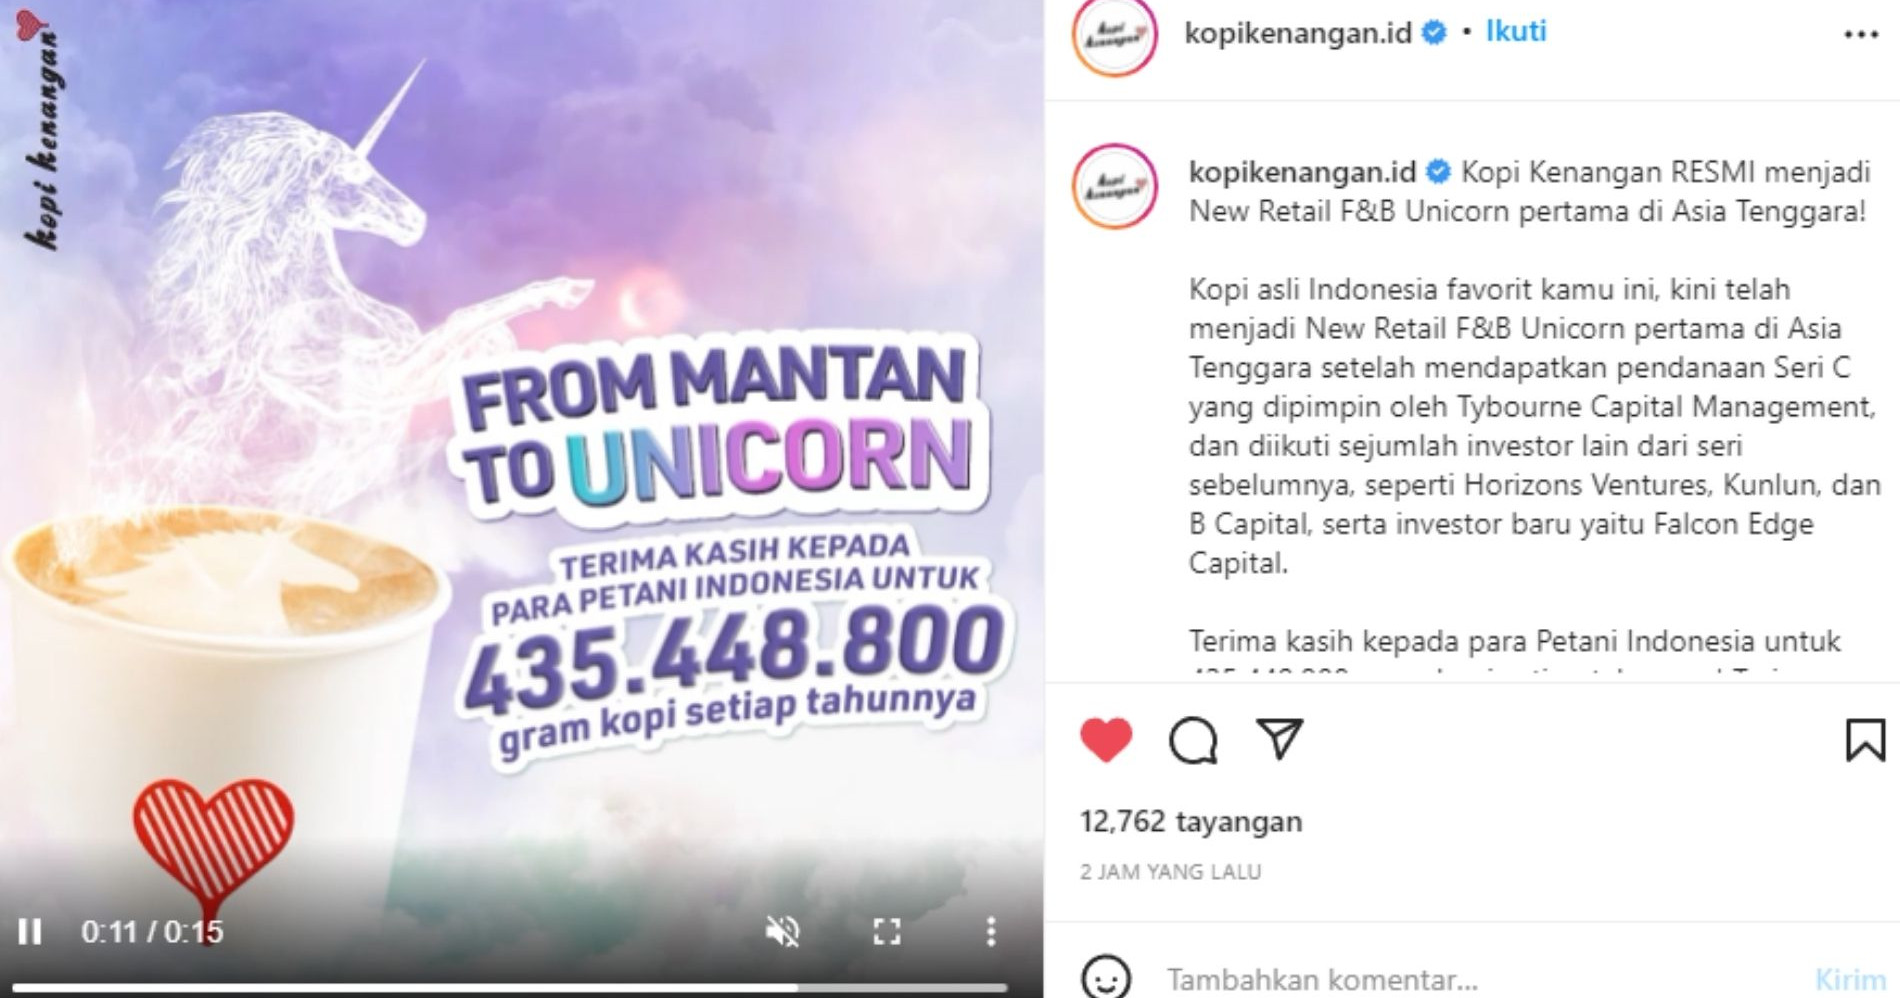 Valuasi Tembus US$1 Miliar, Kopi Kenangan Kini Jadi Startup Unicorn - Image: Instagram Kopi Kenangan